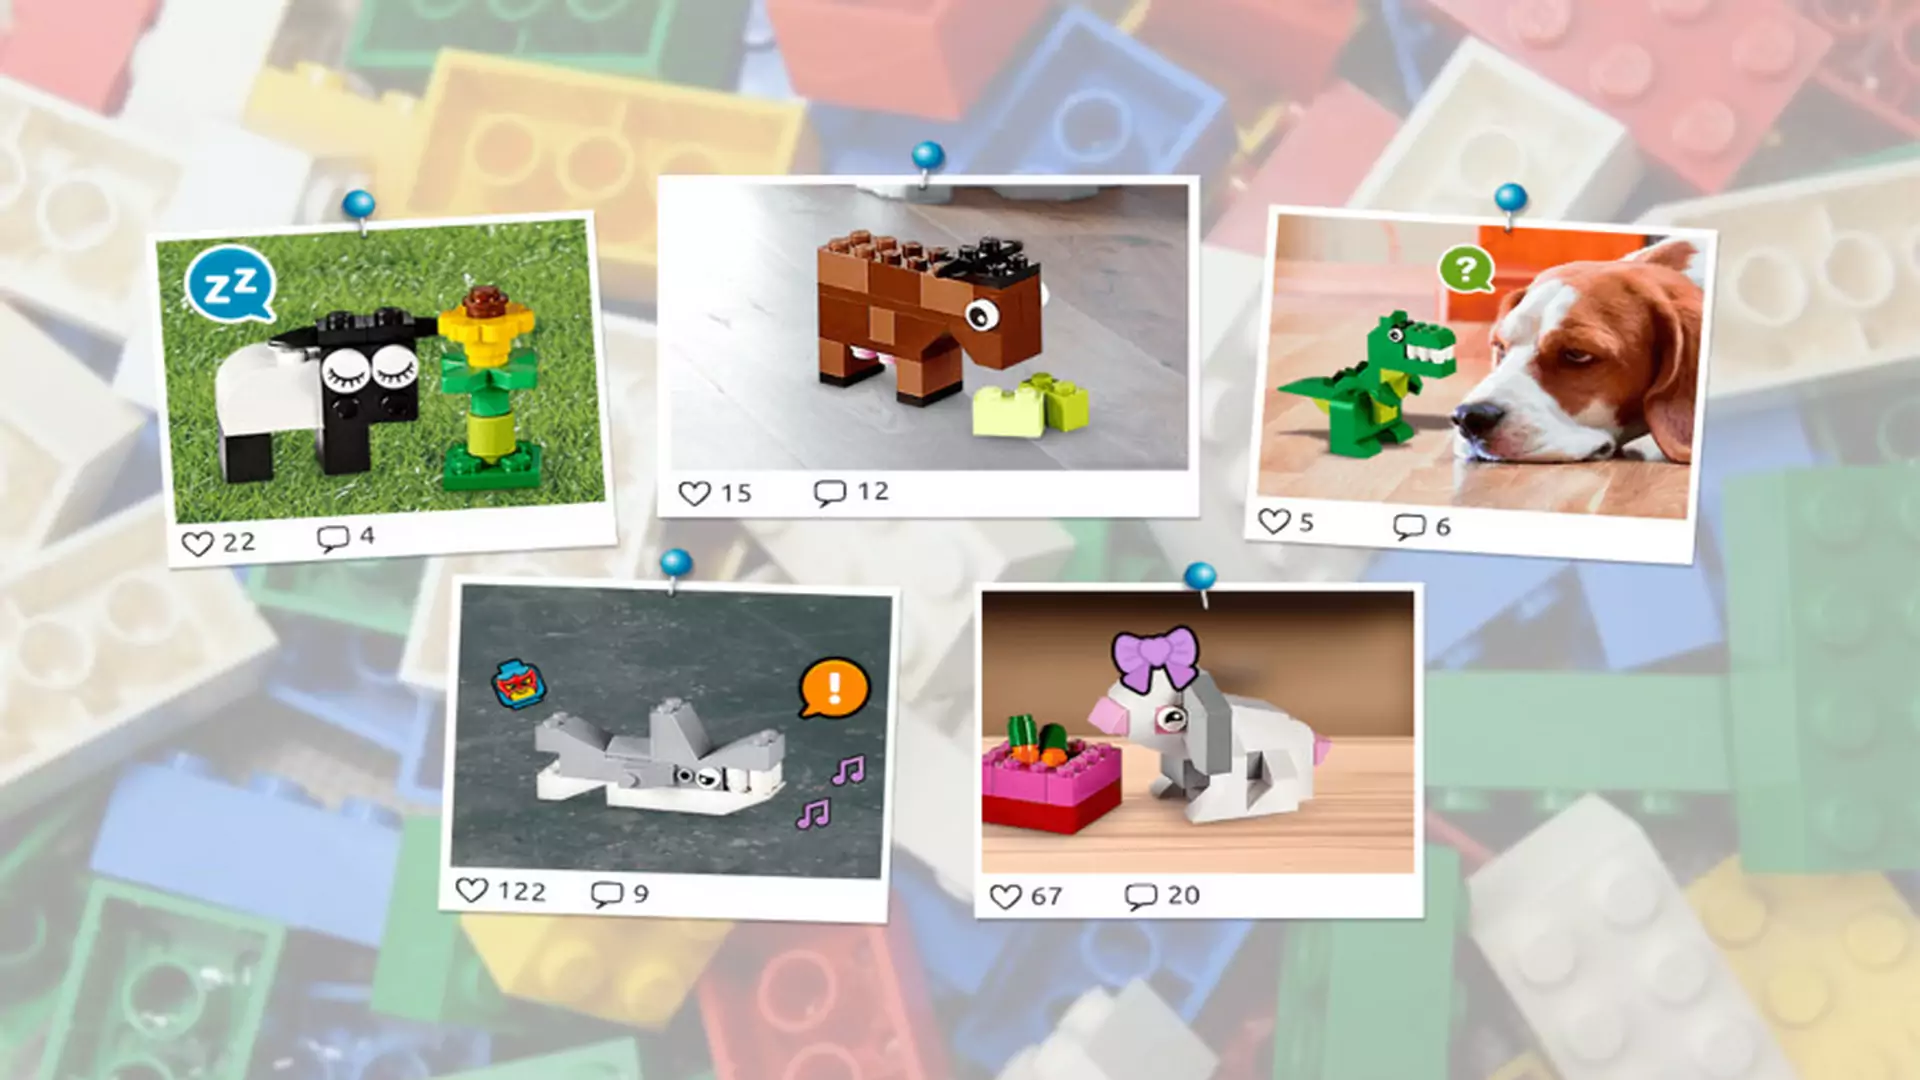 Lego otwiera portal społecznościowy dla dzieci: będzie minifacebook?